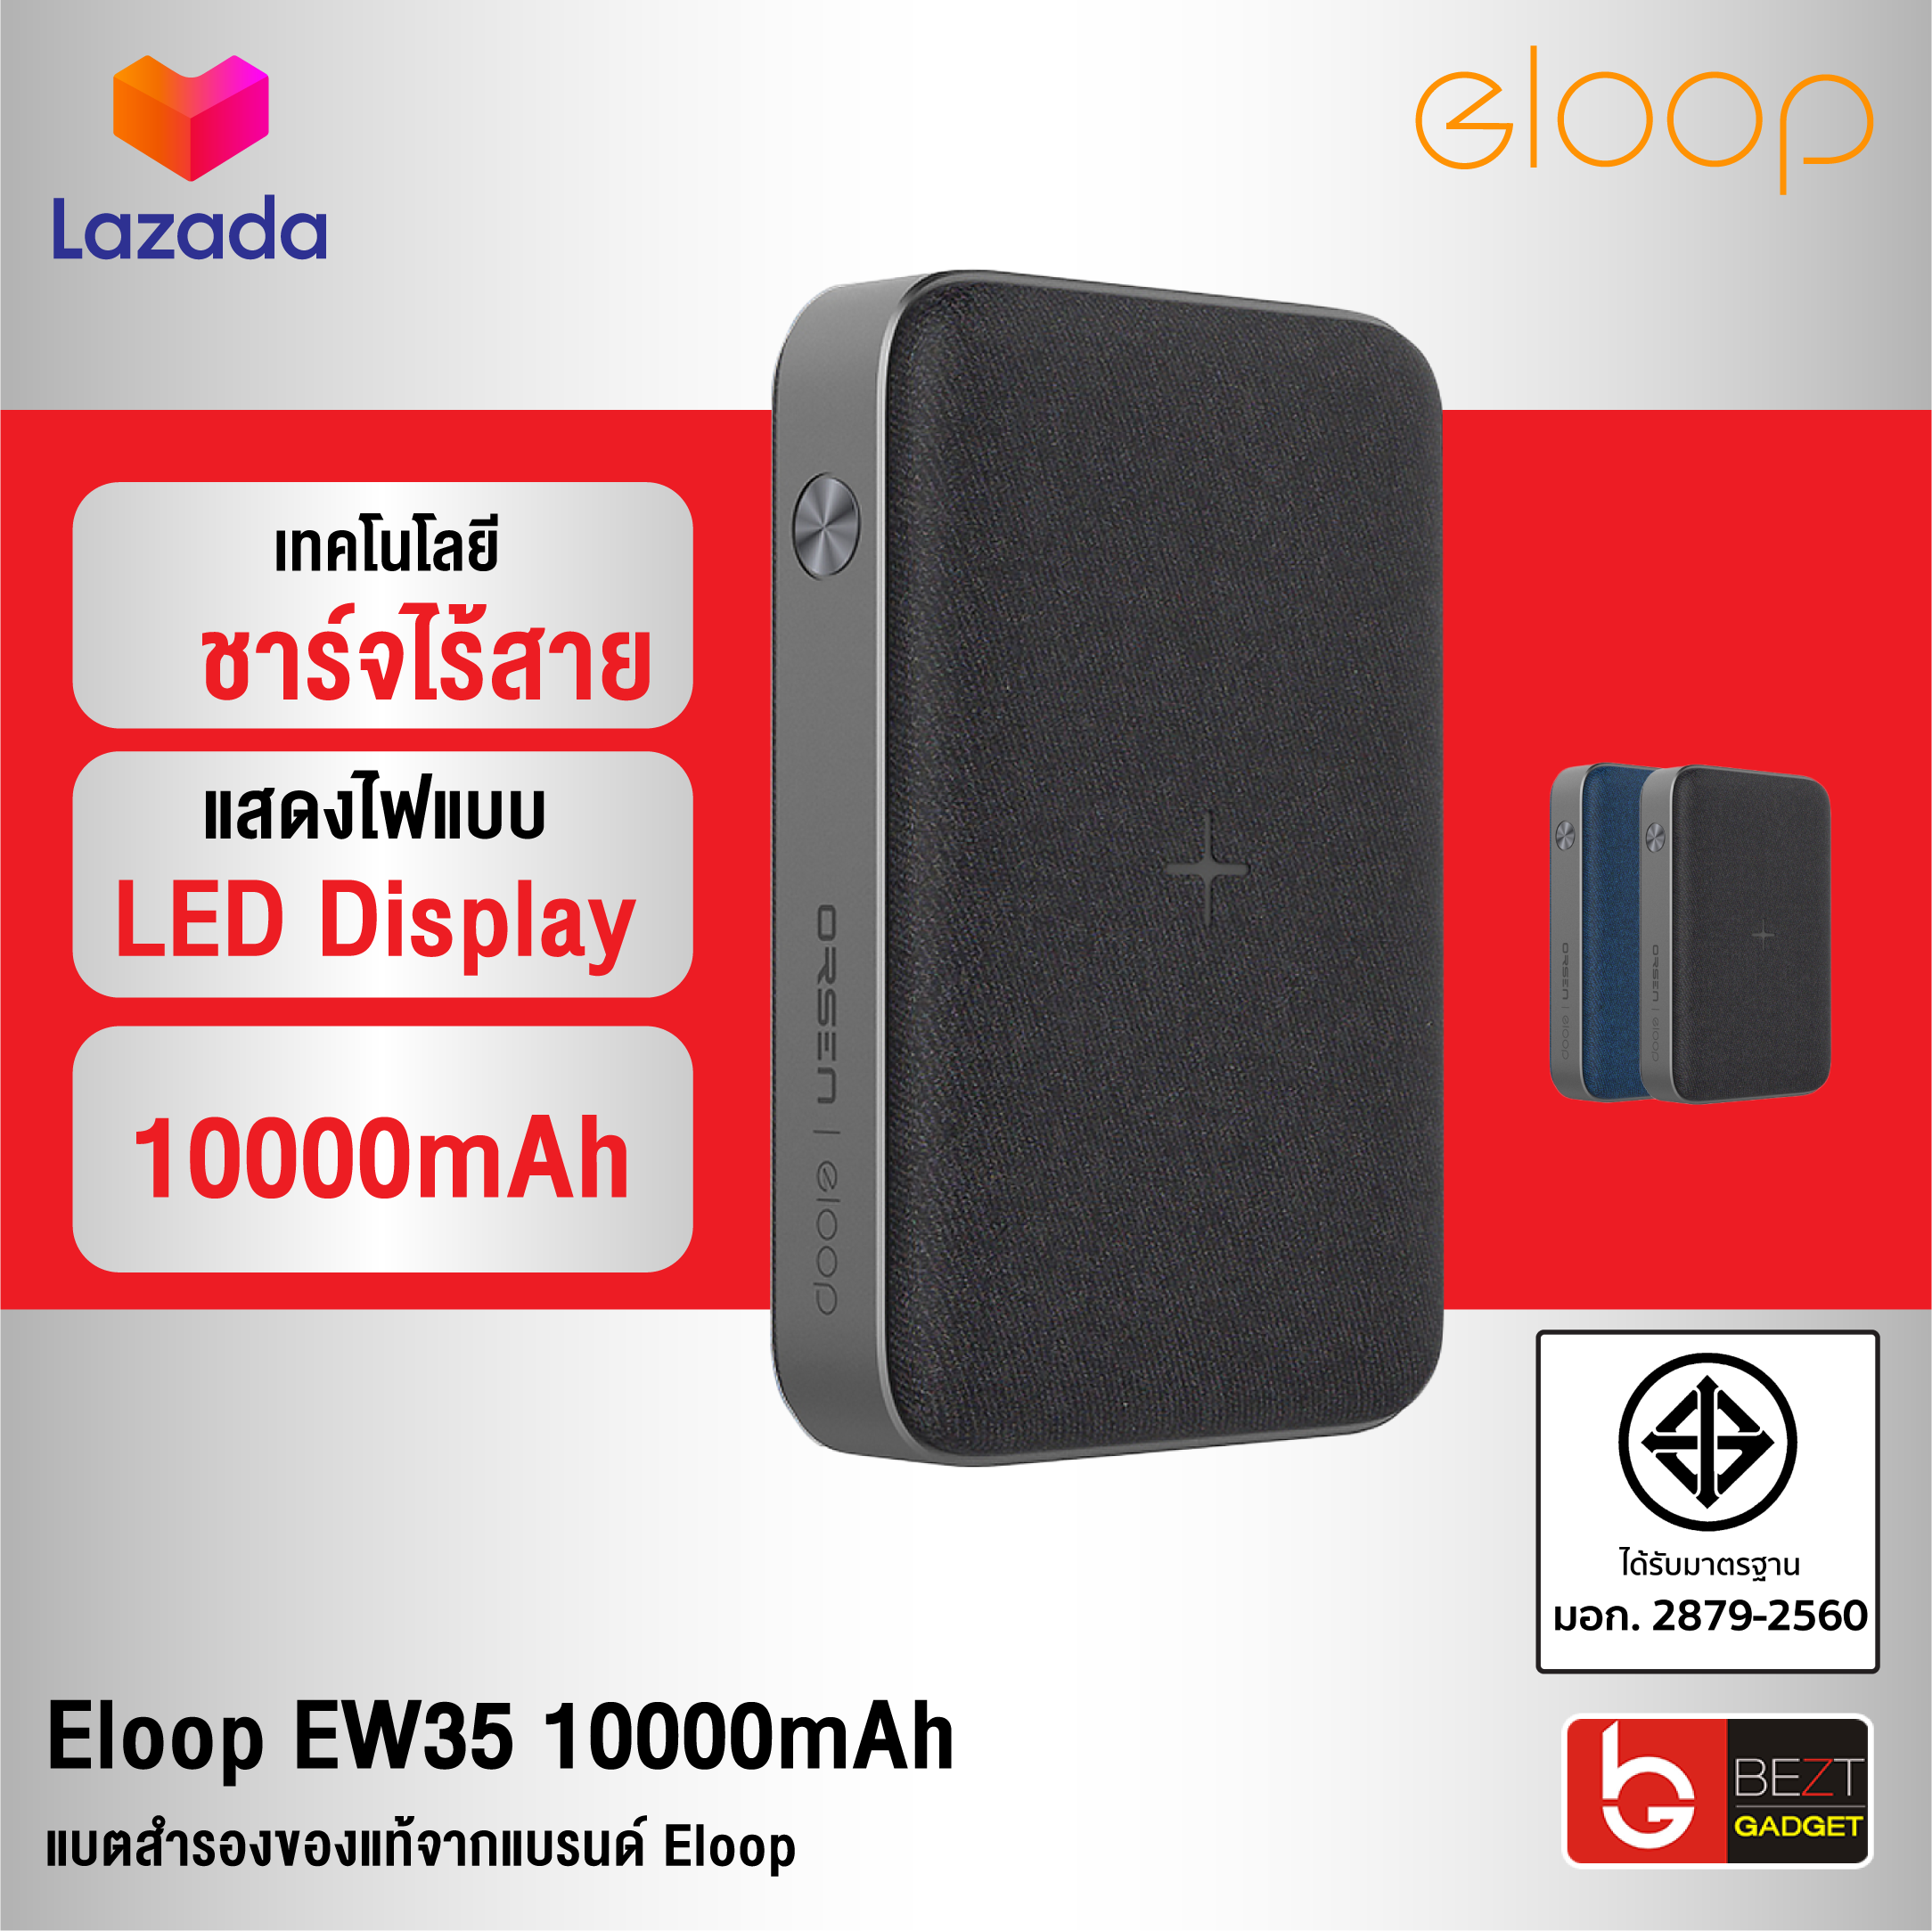 [แพ็คส่งเร็ว1วัน] Eloop EW35 10000mAh 18W แบตสำรองชาร์จไร้สาย Quick Charge 3.0 มี LED ชาร์จเร็ว หุ้มผ้า ฟรีซองผ้า มาตรฐานมอก.